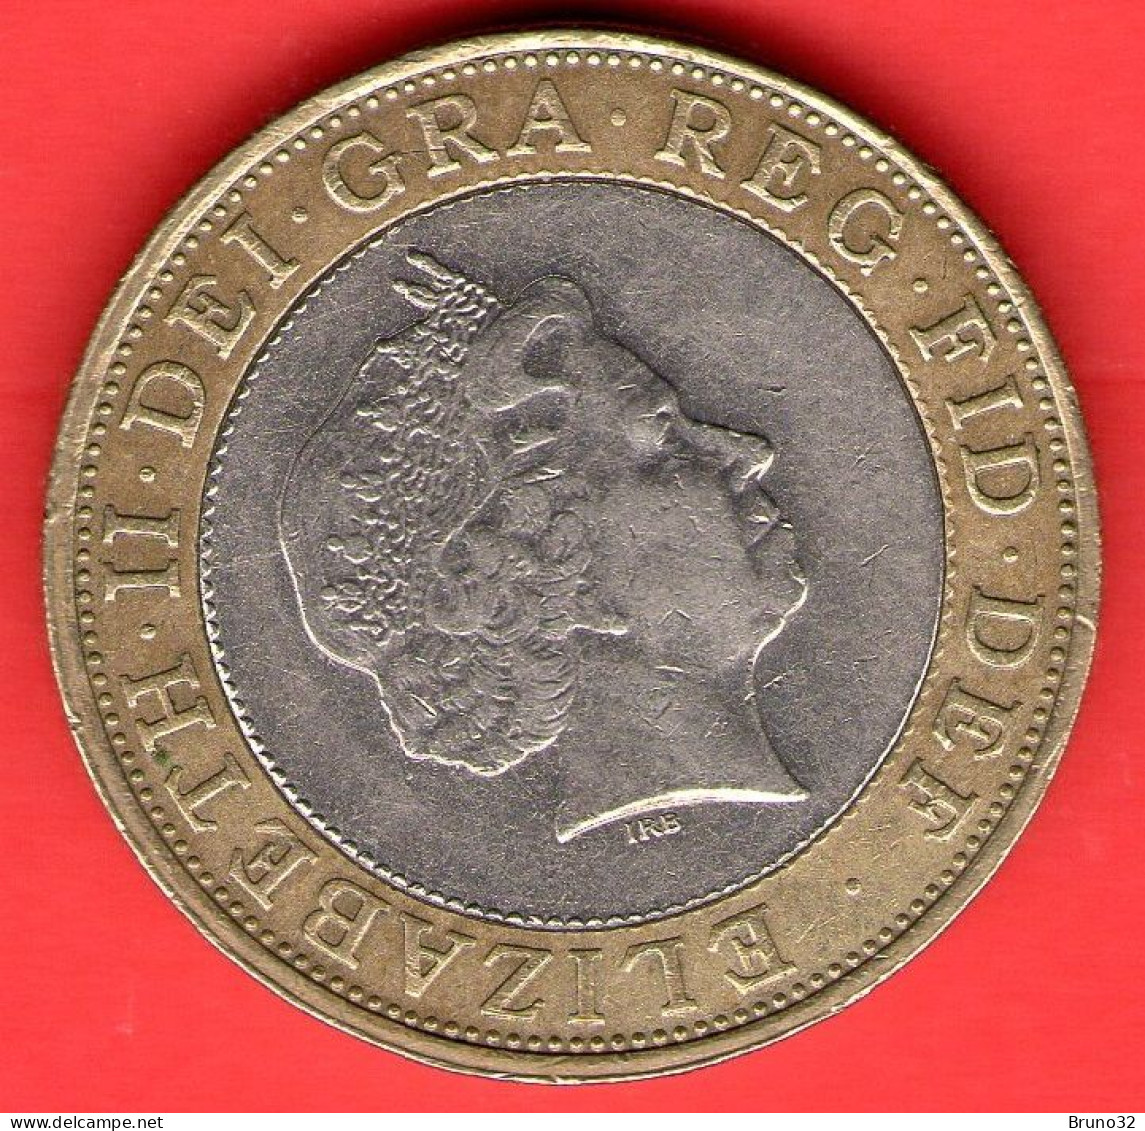 Gran Bretagna - Great Britain - GB - 2 Pounds - 1998 - QFDC/aUNC - Come Da Foto - 2 Pond